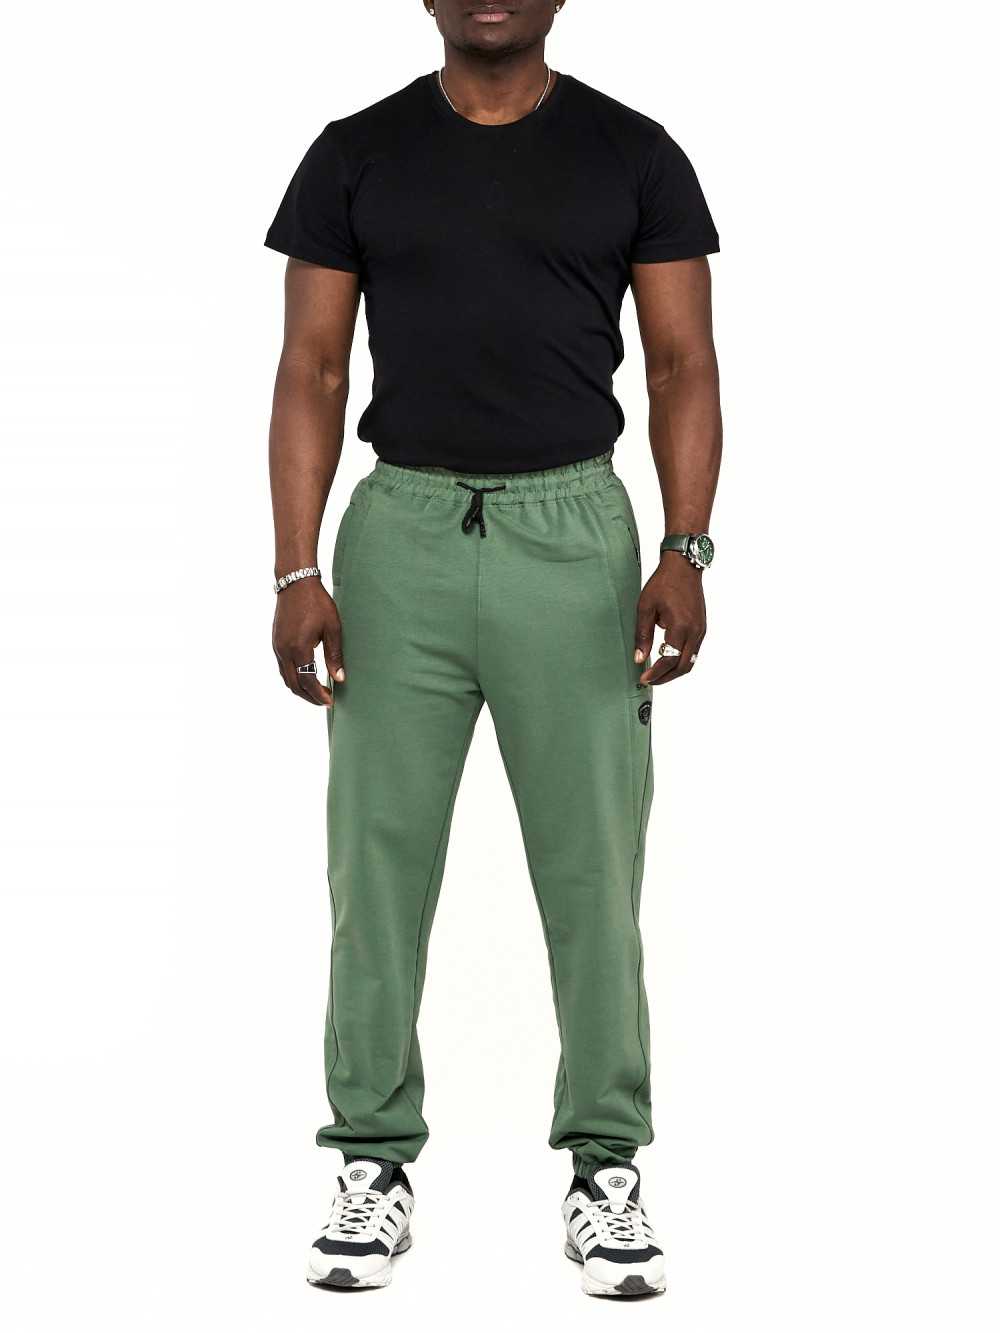 Спортивные брюки мужские NoBrand AD006 зеленые 54 RU